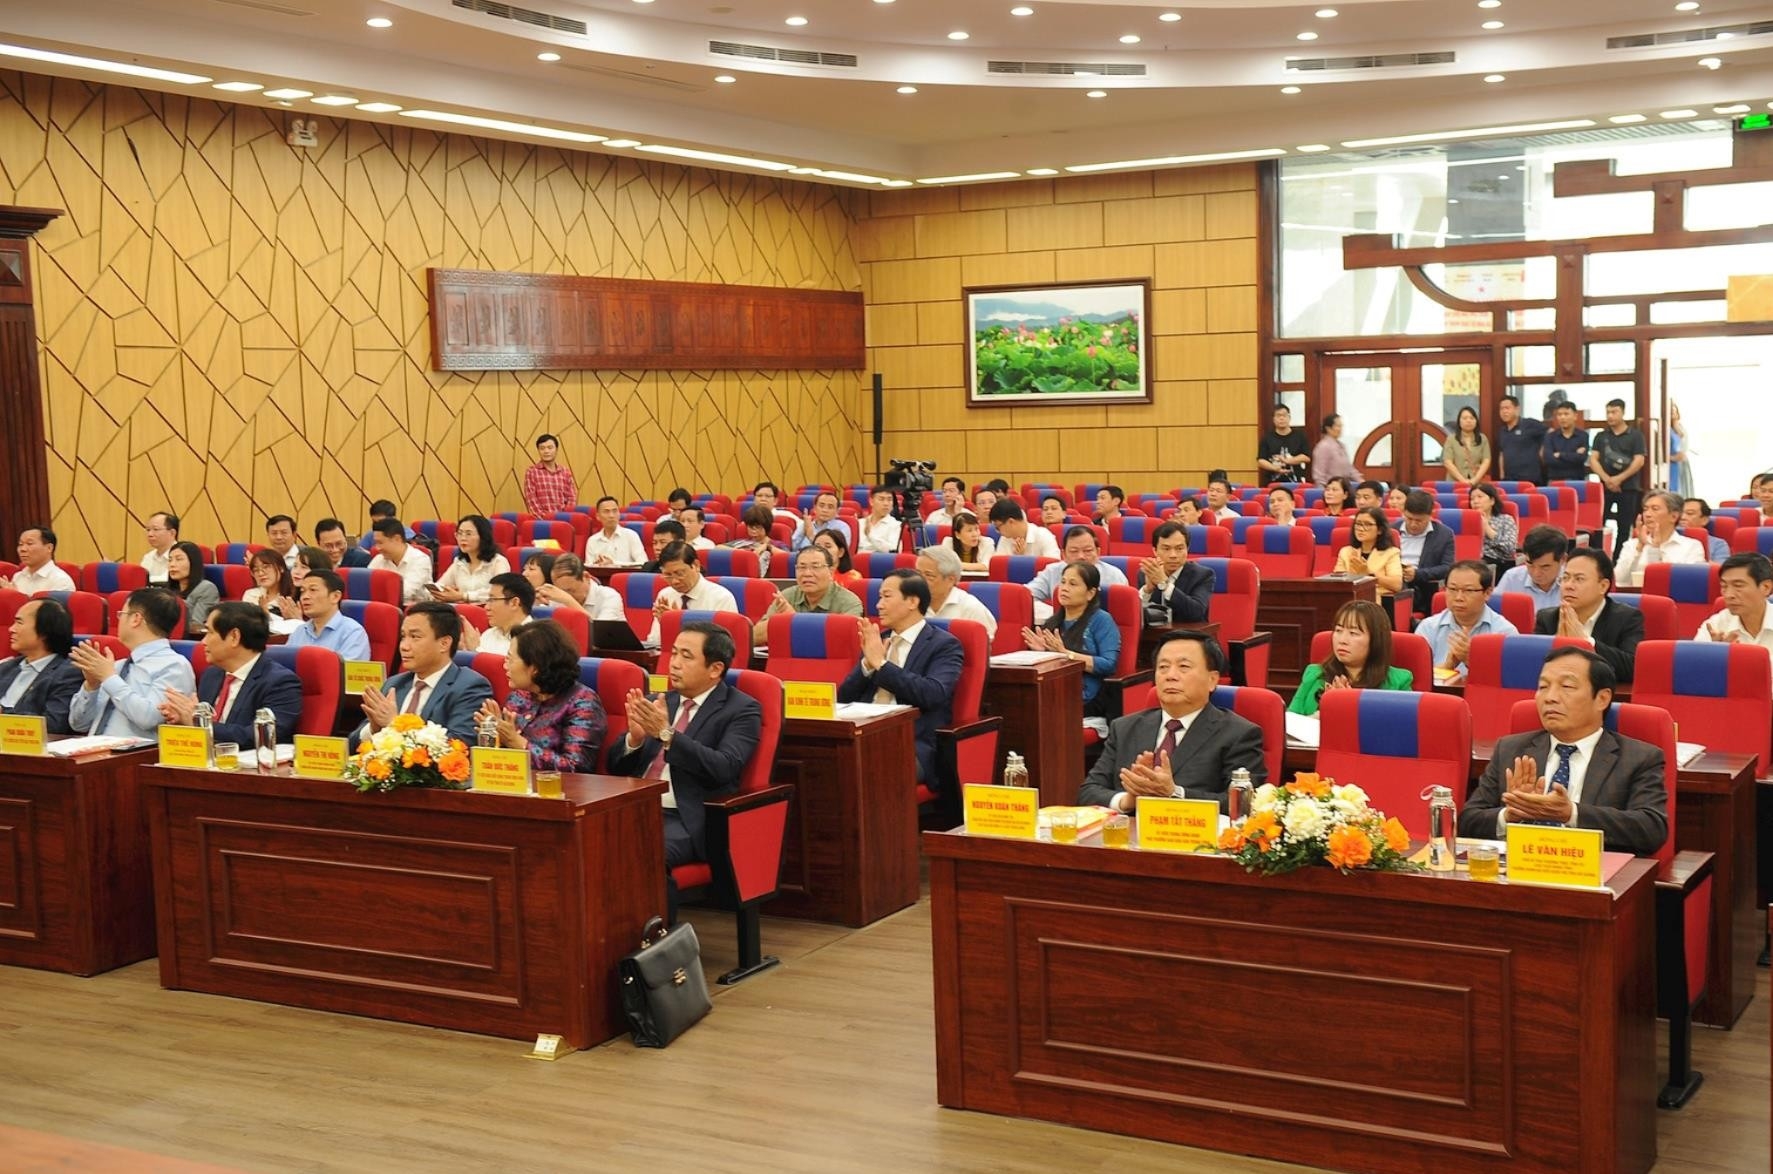 Hội thảo khoa học “Đồng chí Nguyễn Lương Bằng – Người cộng sản kiên trung, mẫu mực, nhà lãnh đạo tài năng của Đảng và cách mạng Việt Nam”